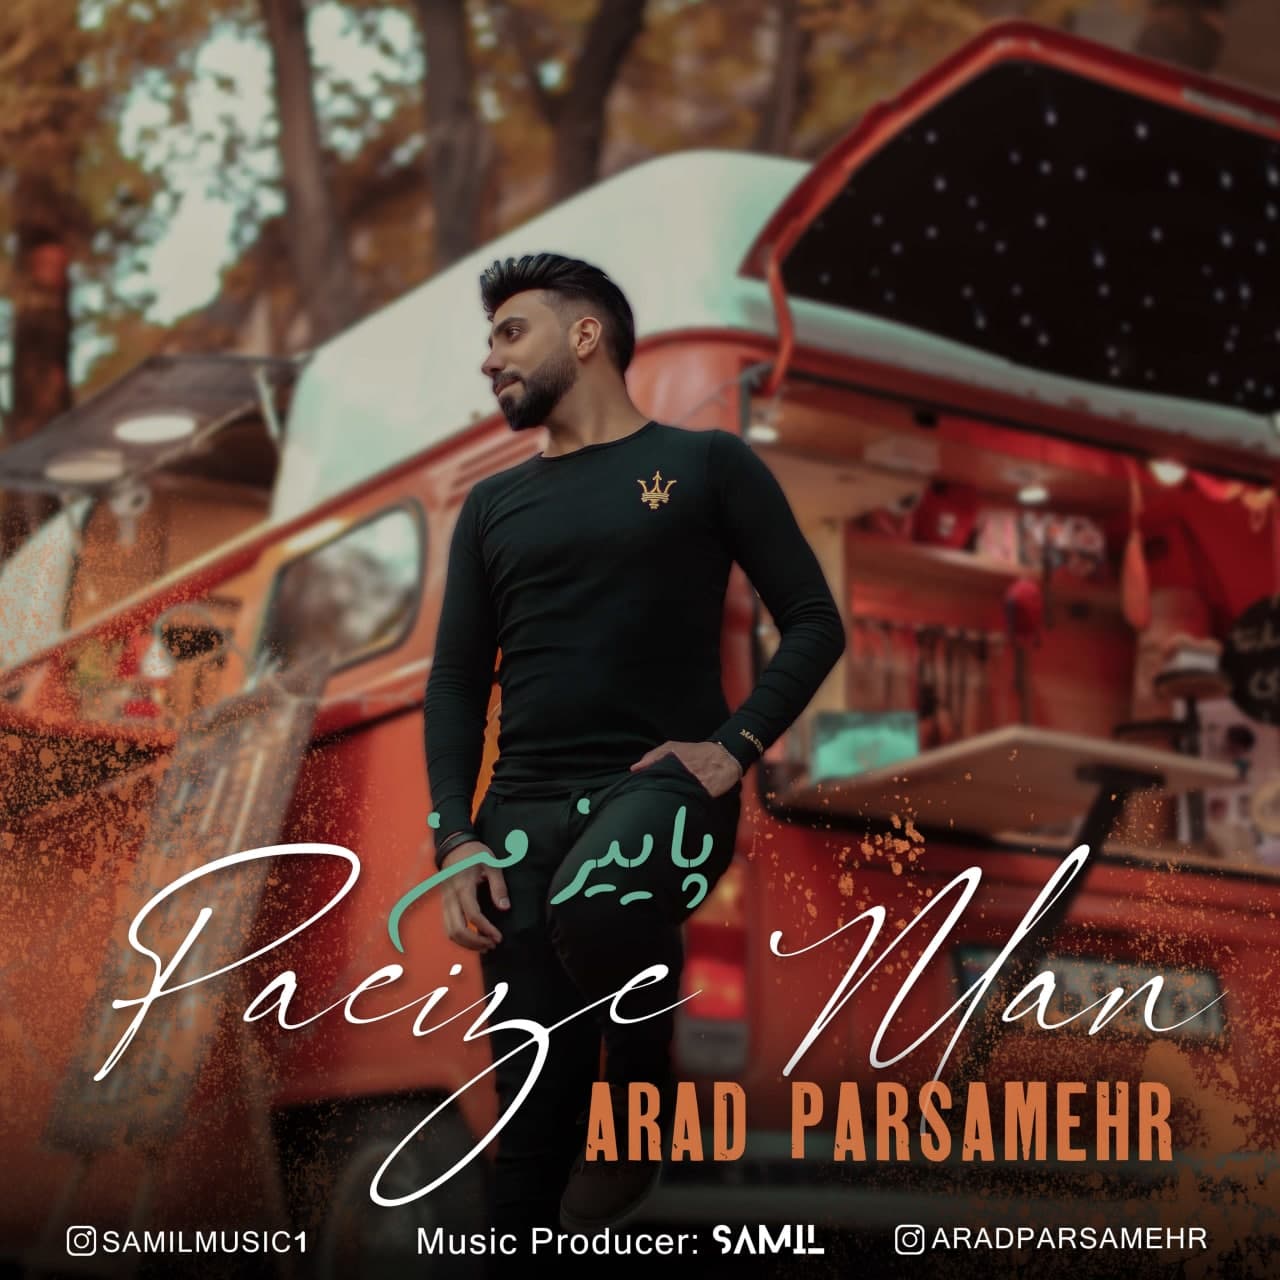 Arad Parsamehr – Paeize Man